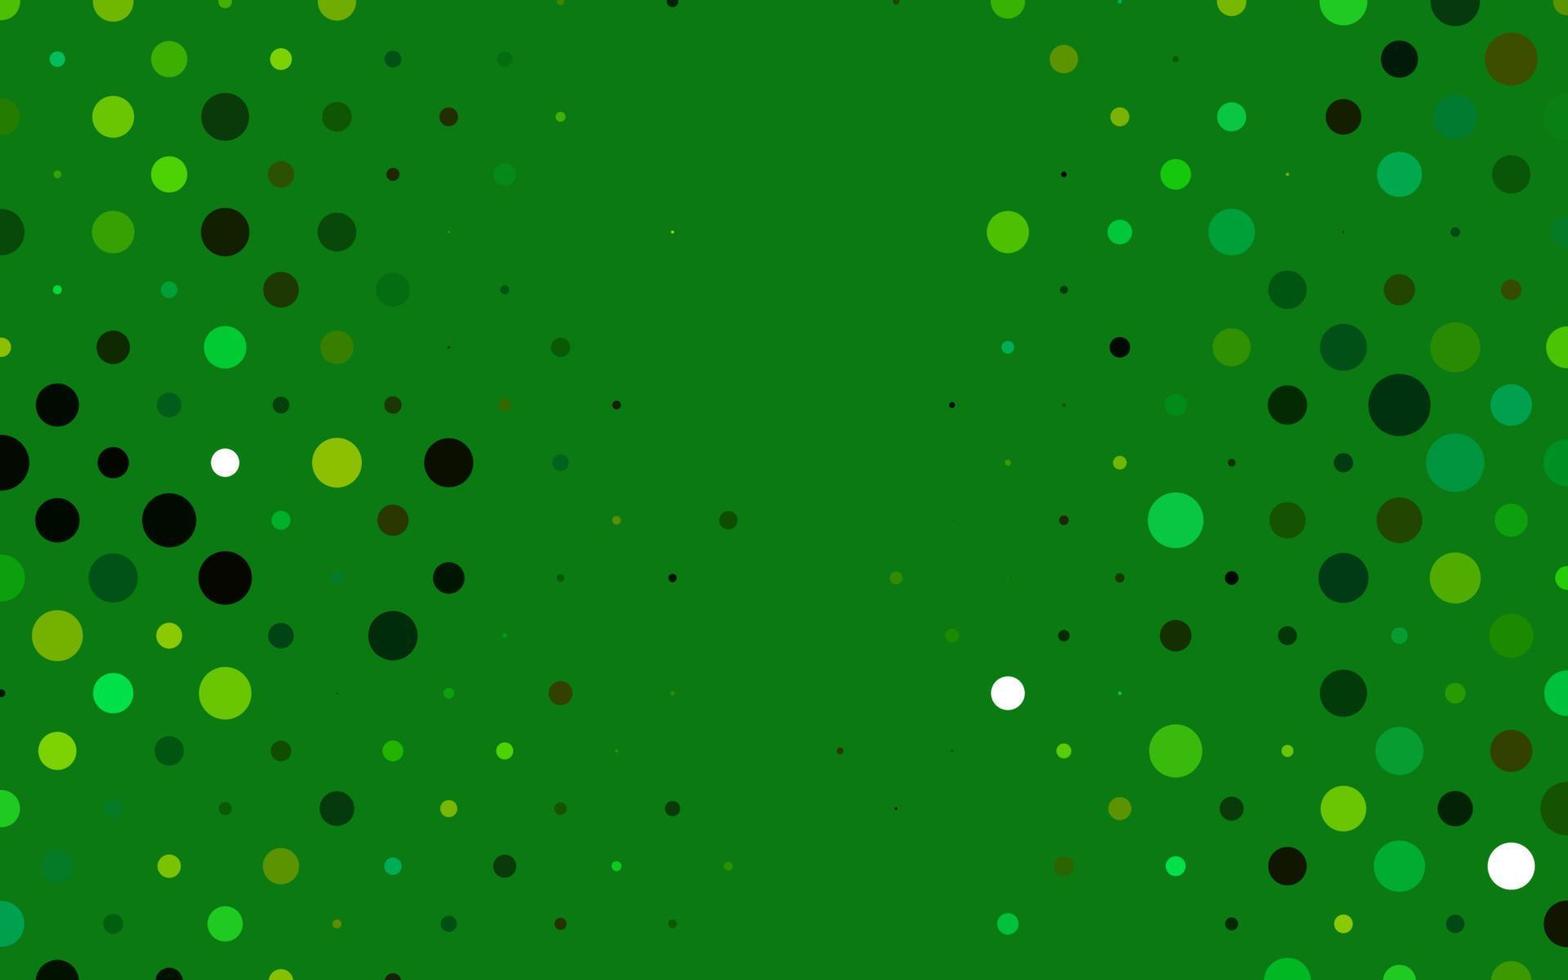 hellgrünes, gelbes Vektorlayout mit Kreisformen. vektor